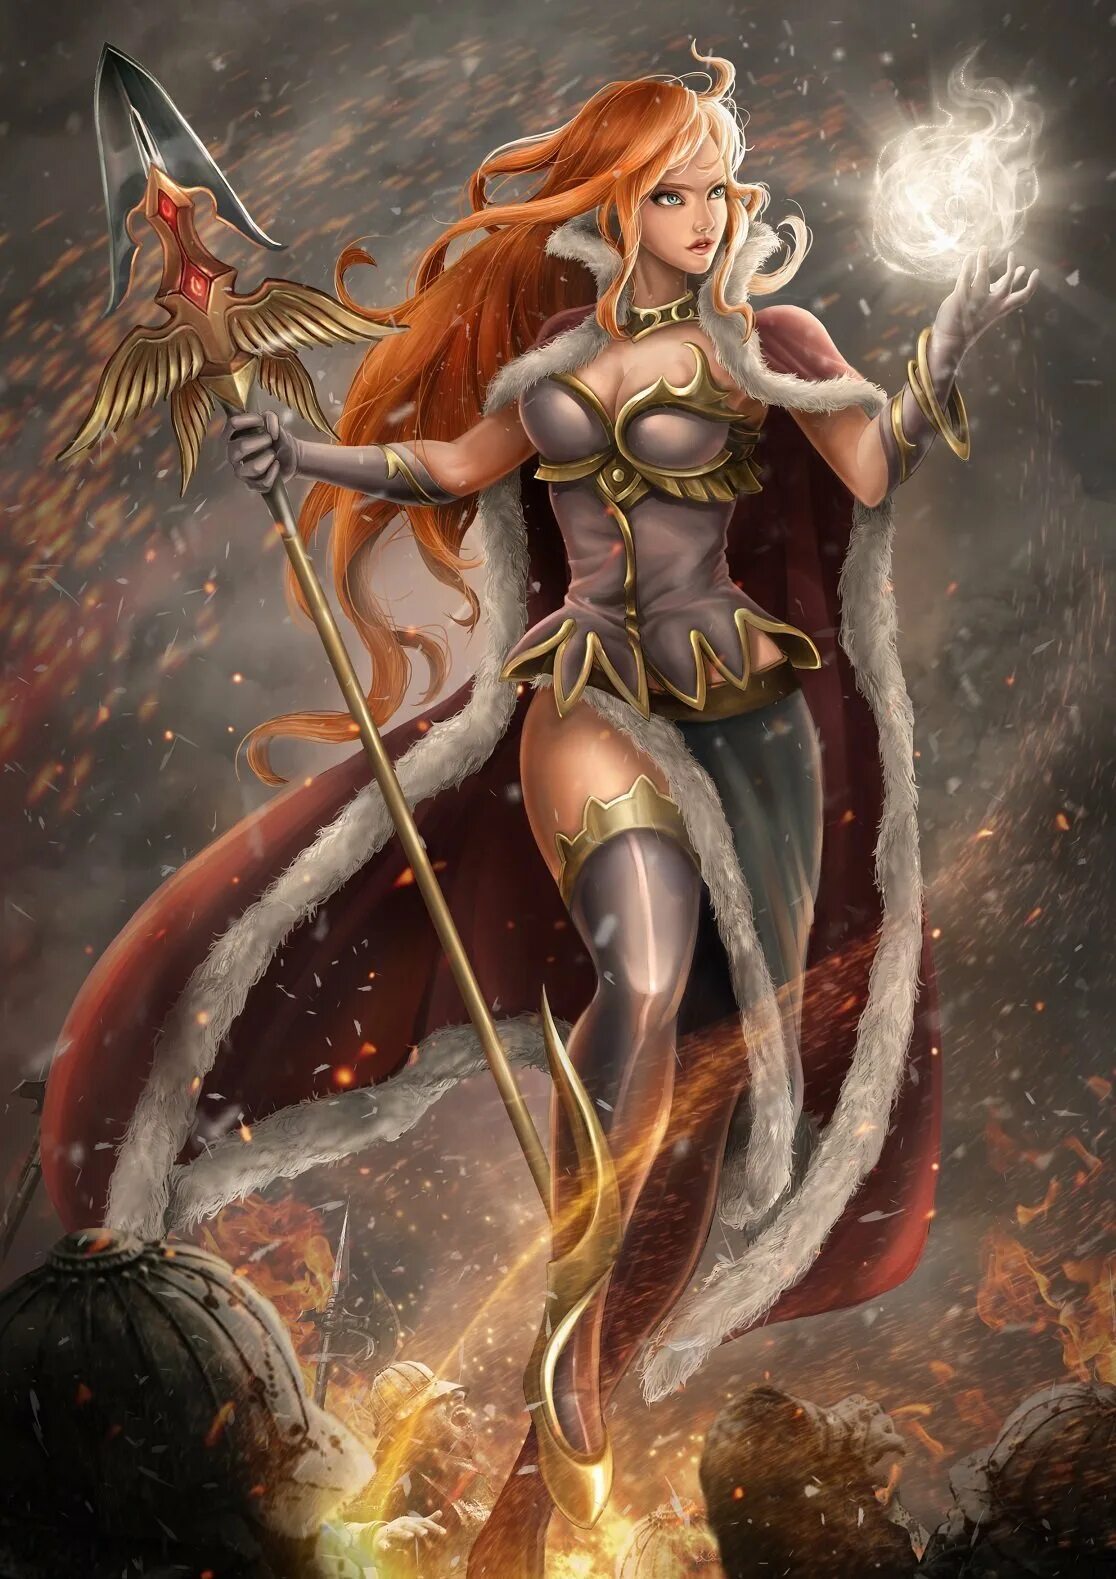 ЭНИО богиня войны. Афина богиня арт. Афина богиня воительница. Афина богиня фэнтези. Какую богиню называли воительница